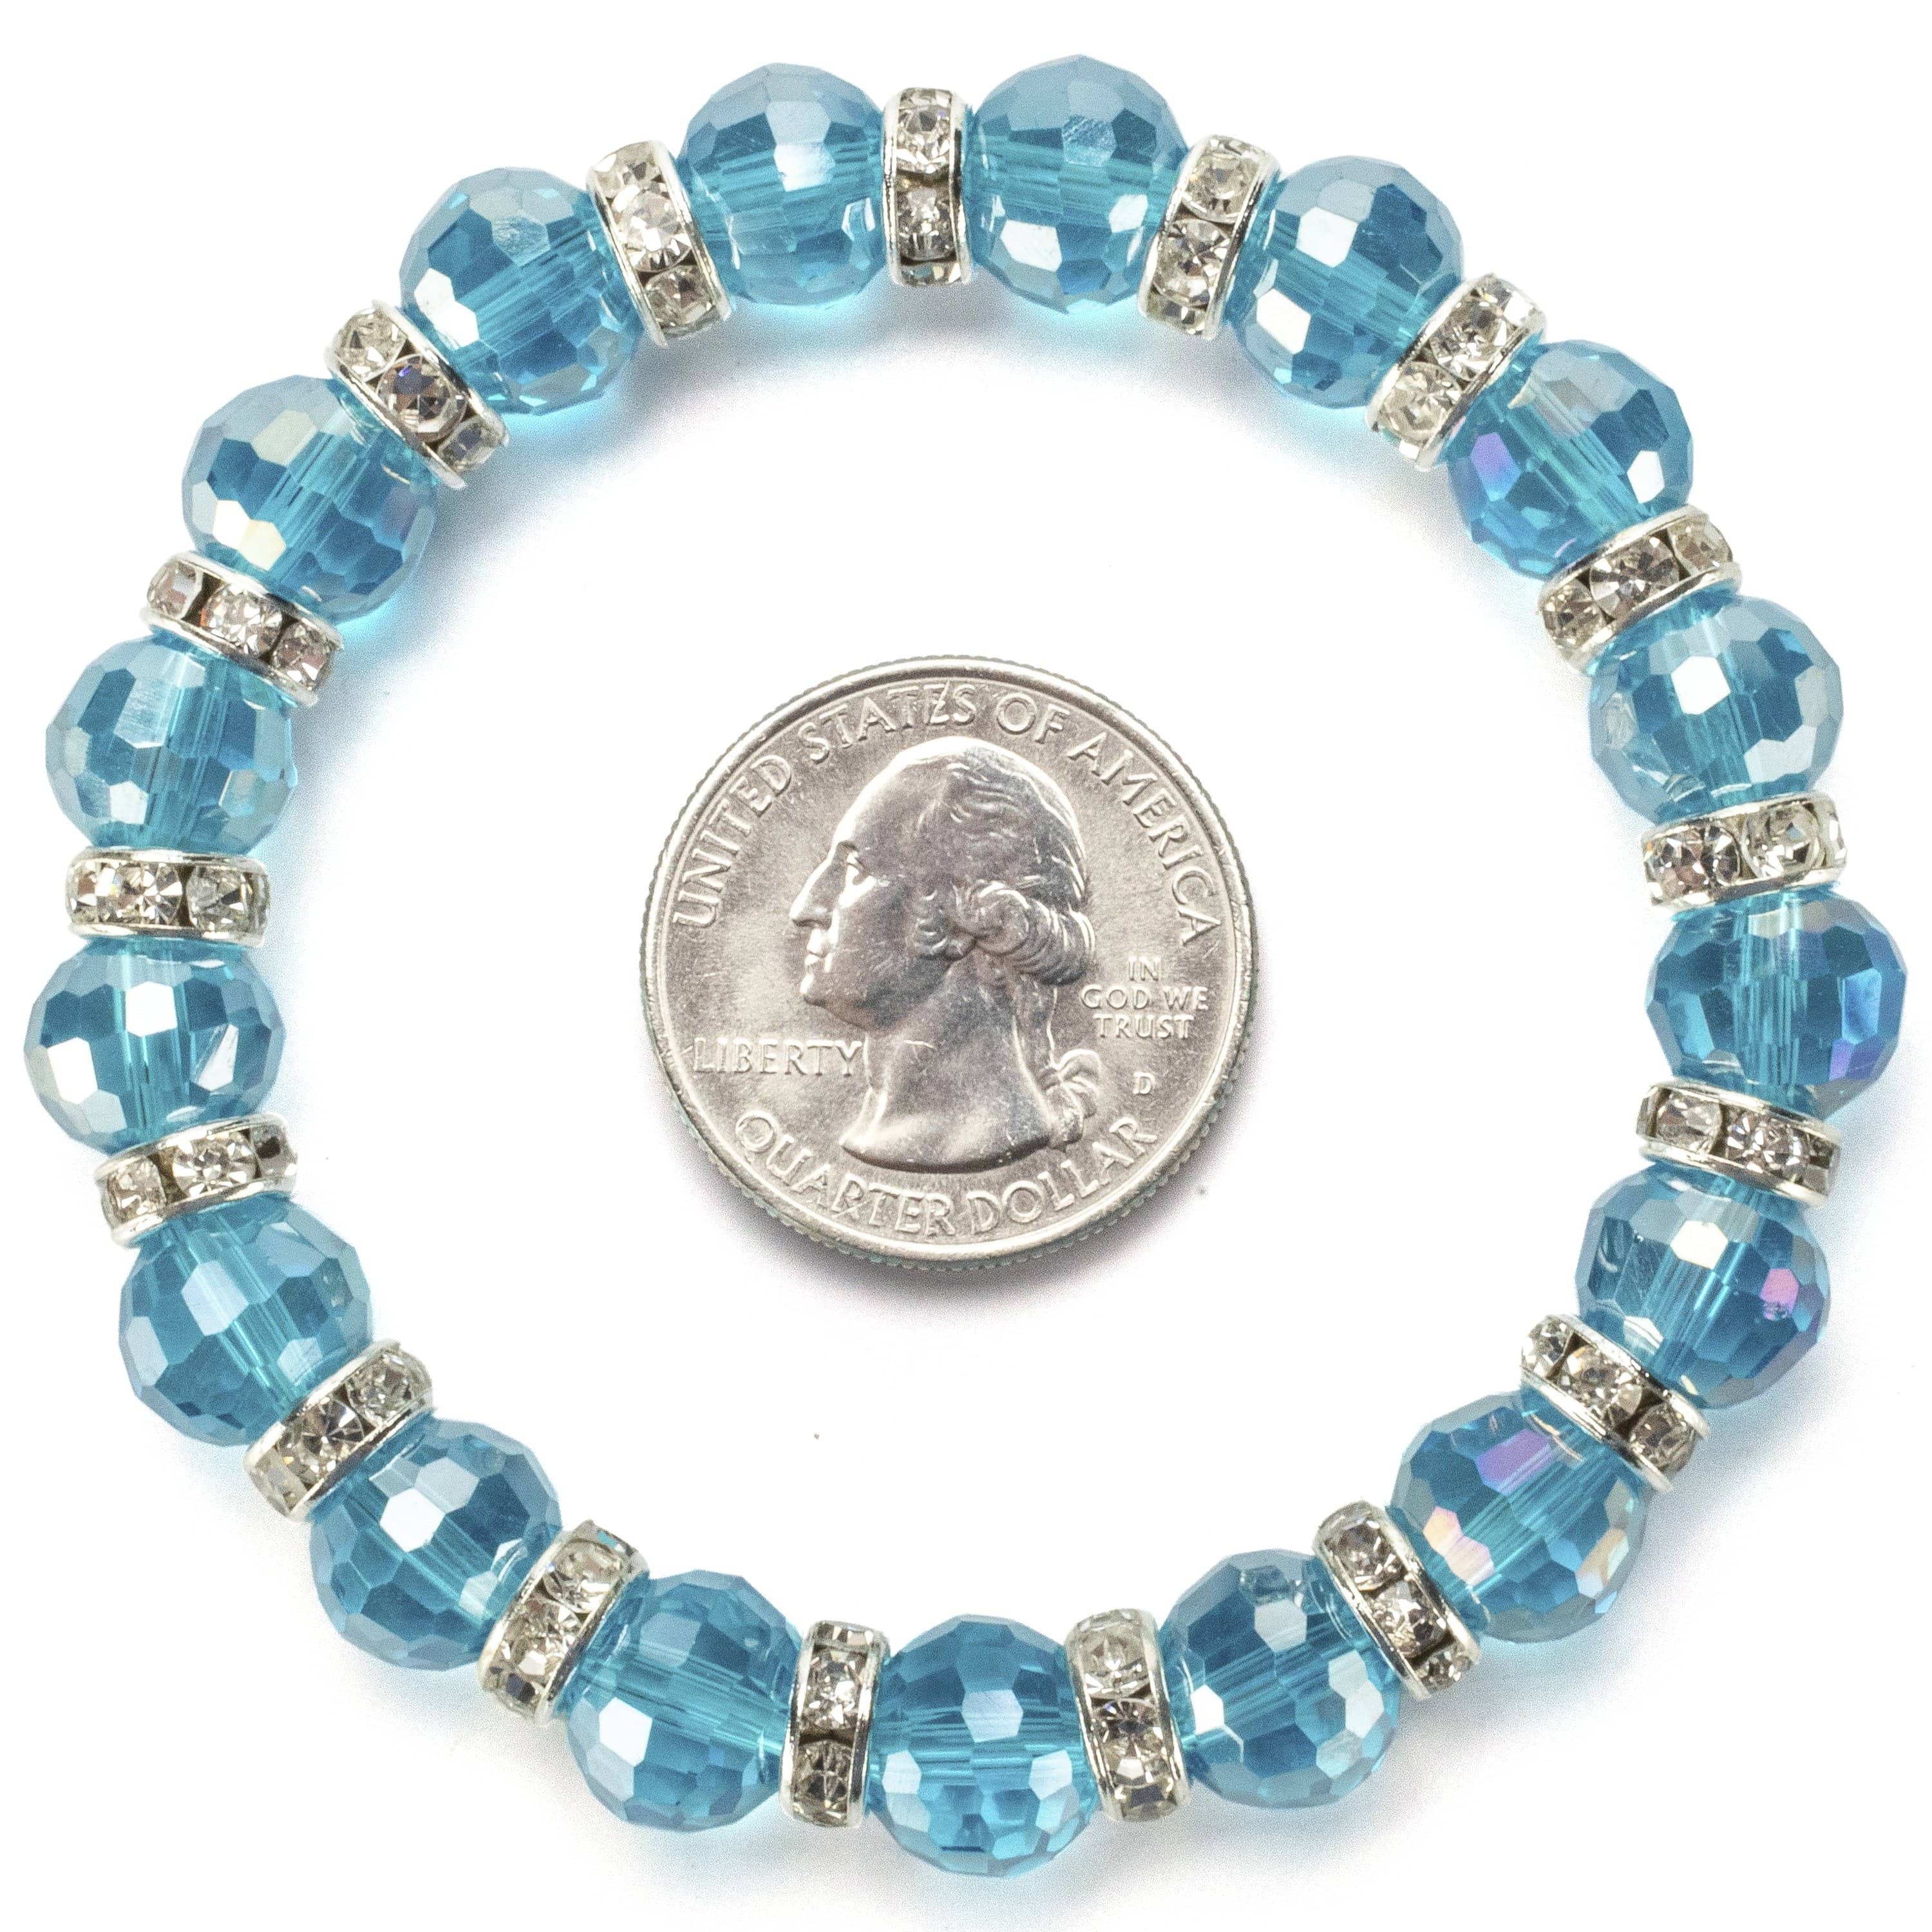 Kalifano Gorgeous Glass Jewelry Aqua Marine Gorgeous Glass Bracelet with Cubic Zirconia Crystals BLUE-BGG-28